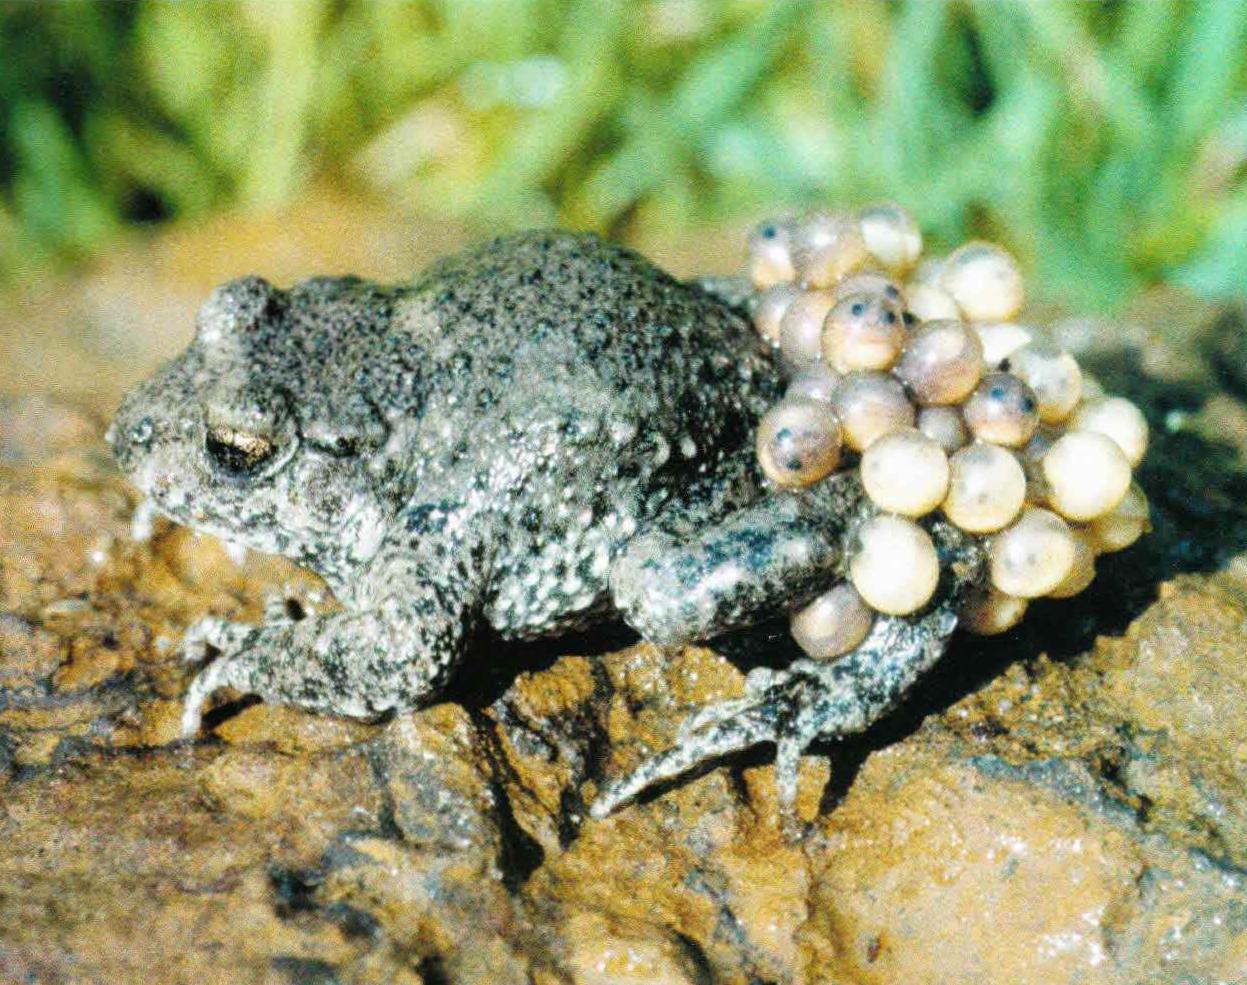 С марта до сентября можно увидеть самцов жабы-повитухи с обмотанными вокруг бедер яйцевыми шнурами.